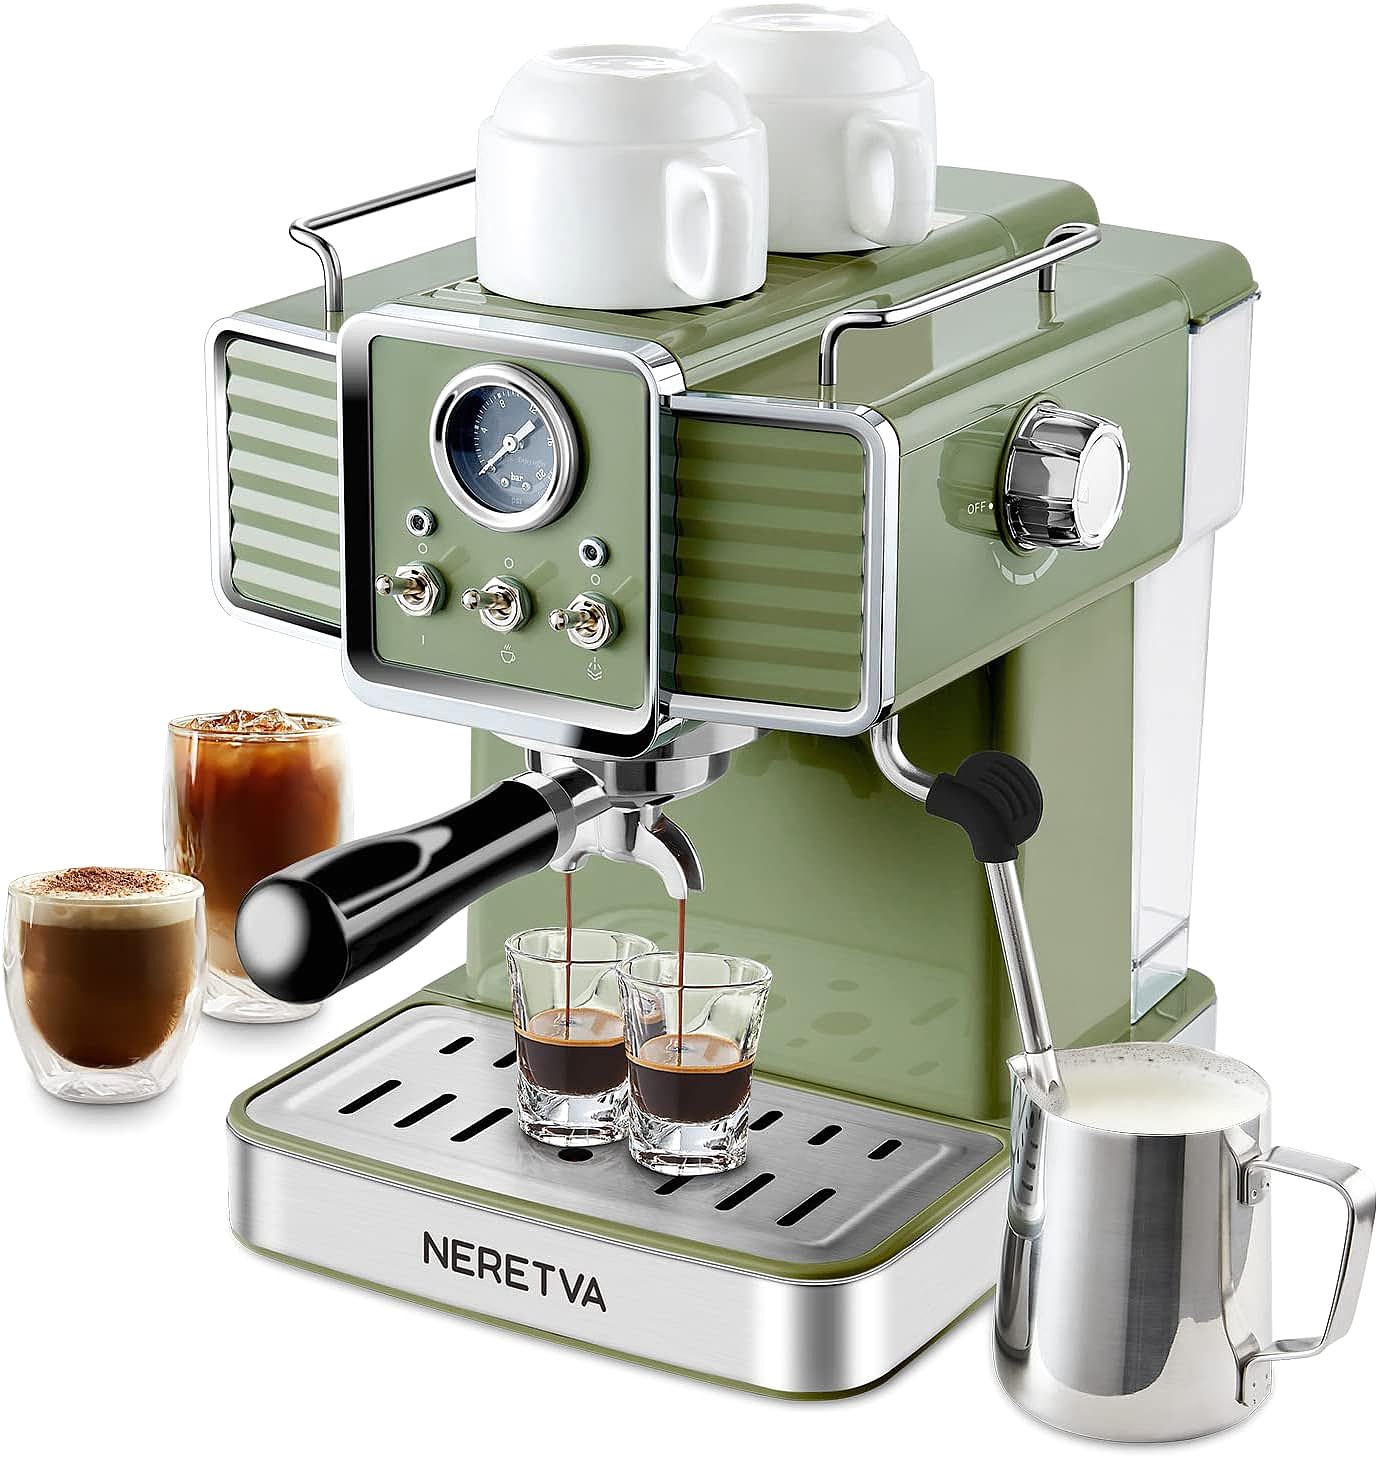 Neretva PE3690U Espresso Machine: An Ideal Choice for Home Baristas